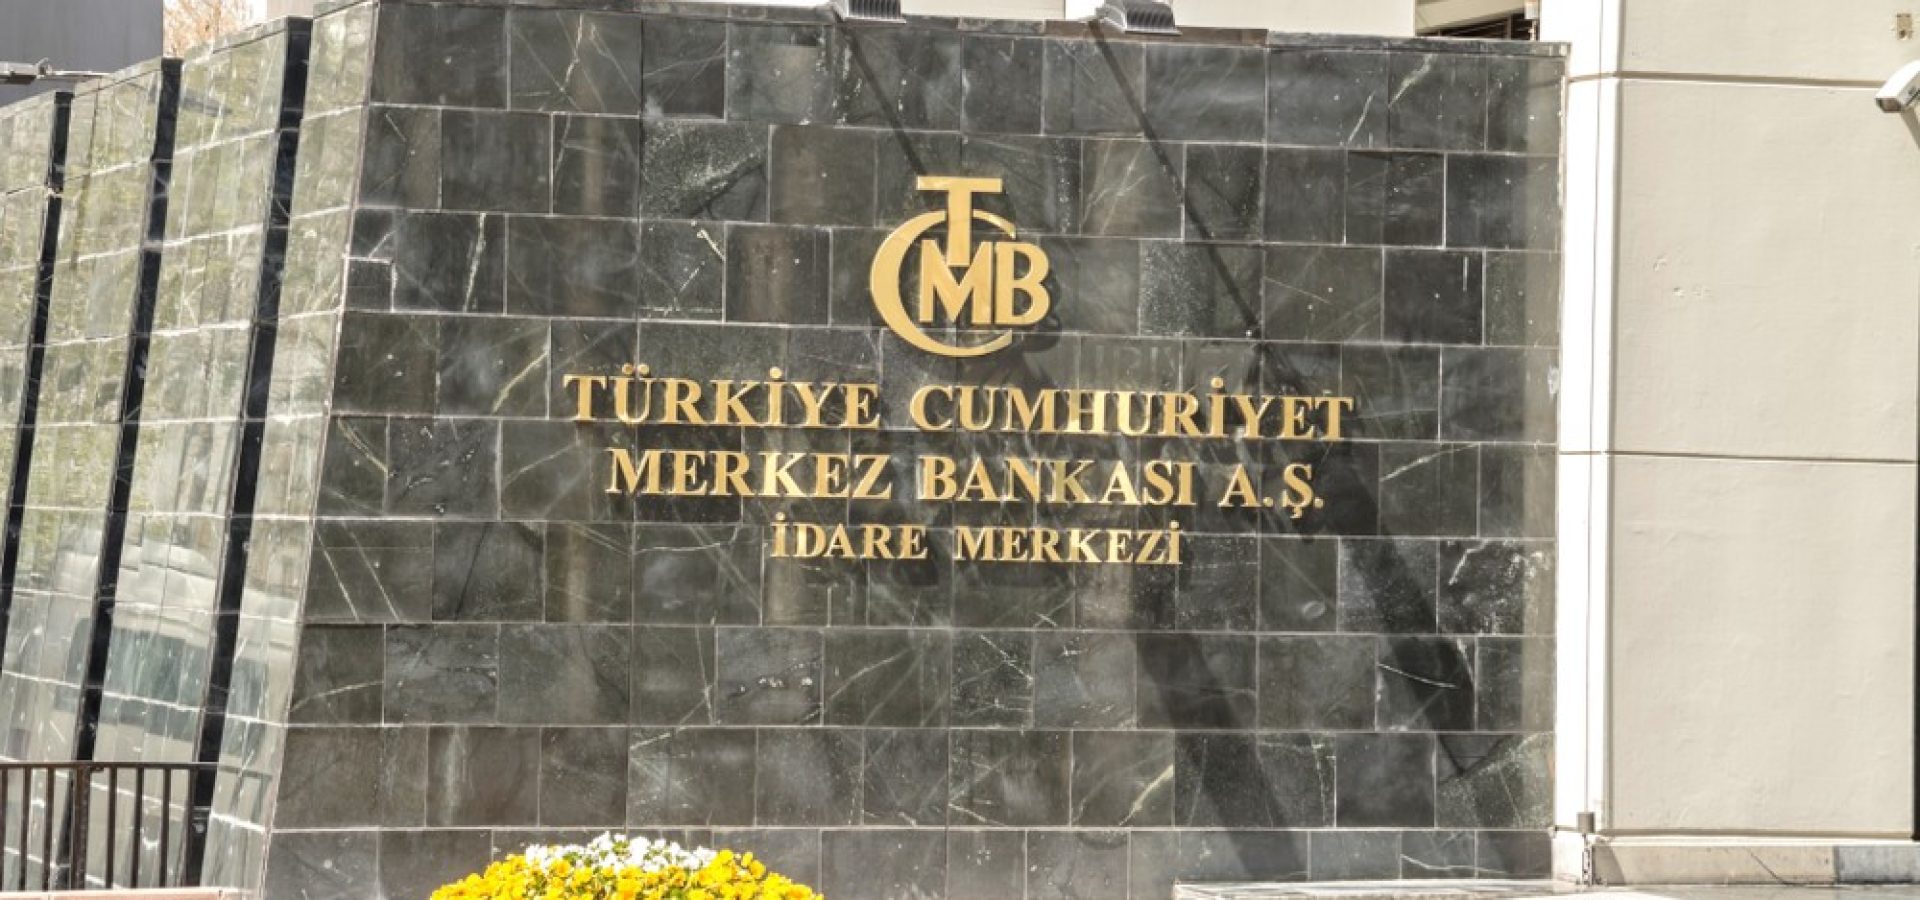 Wibest – Turkish: Turkish Central Bank entrance